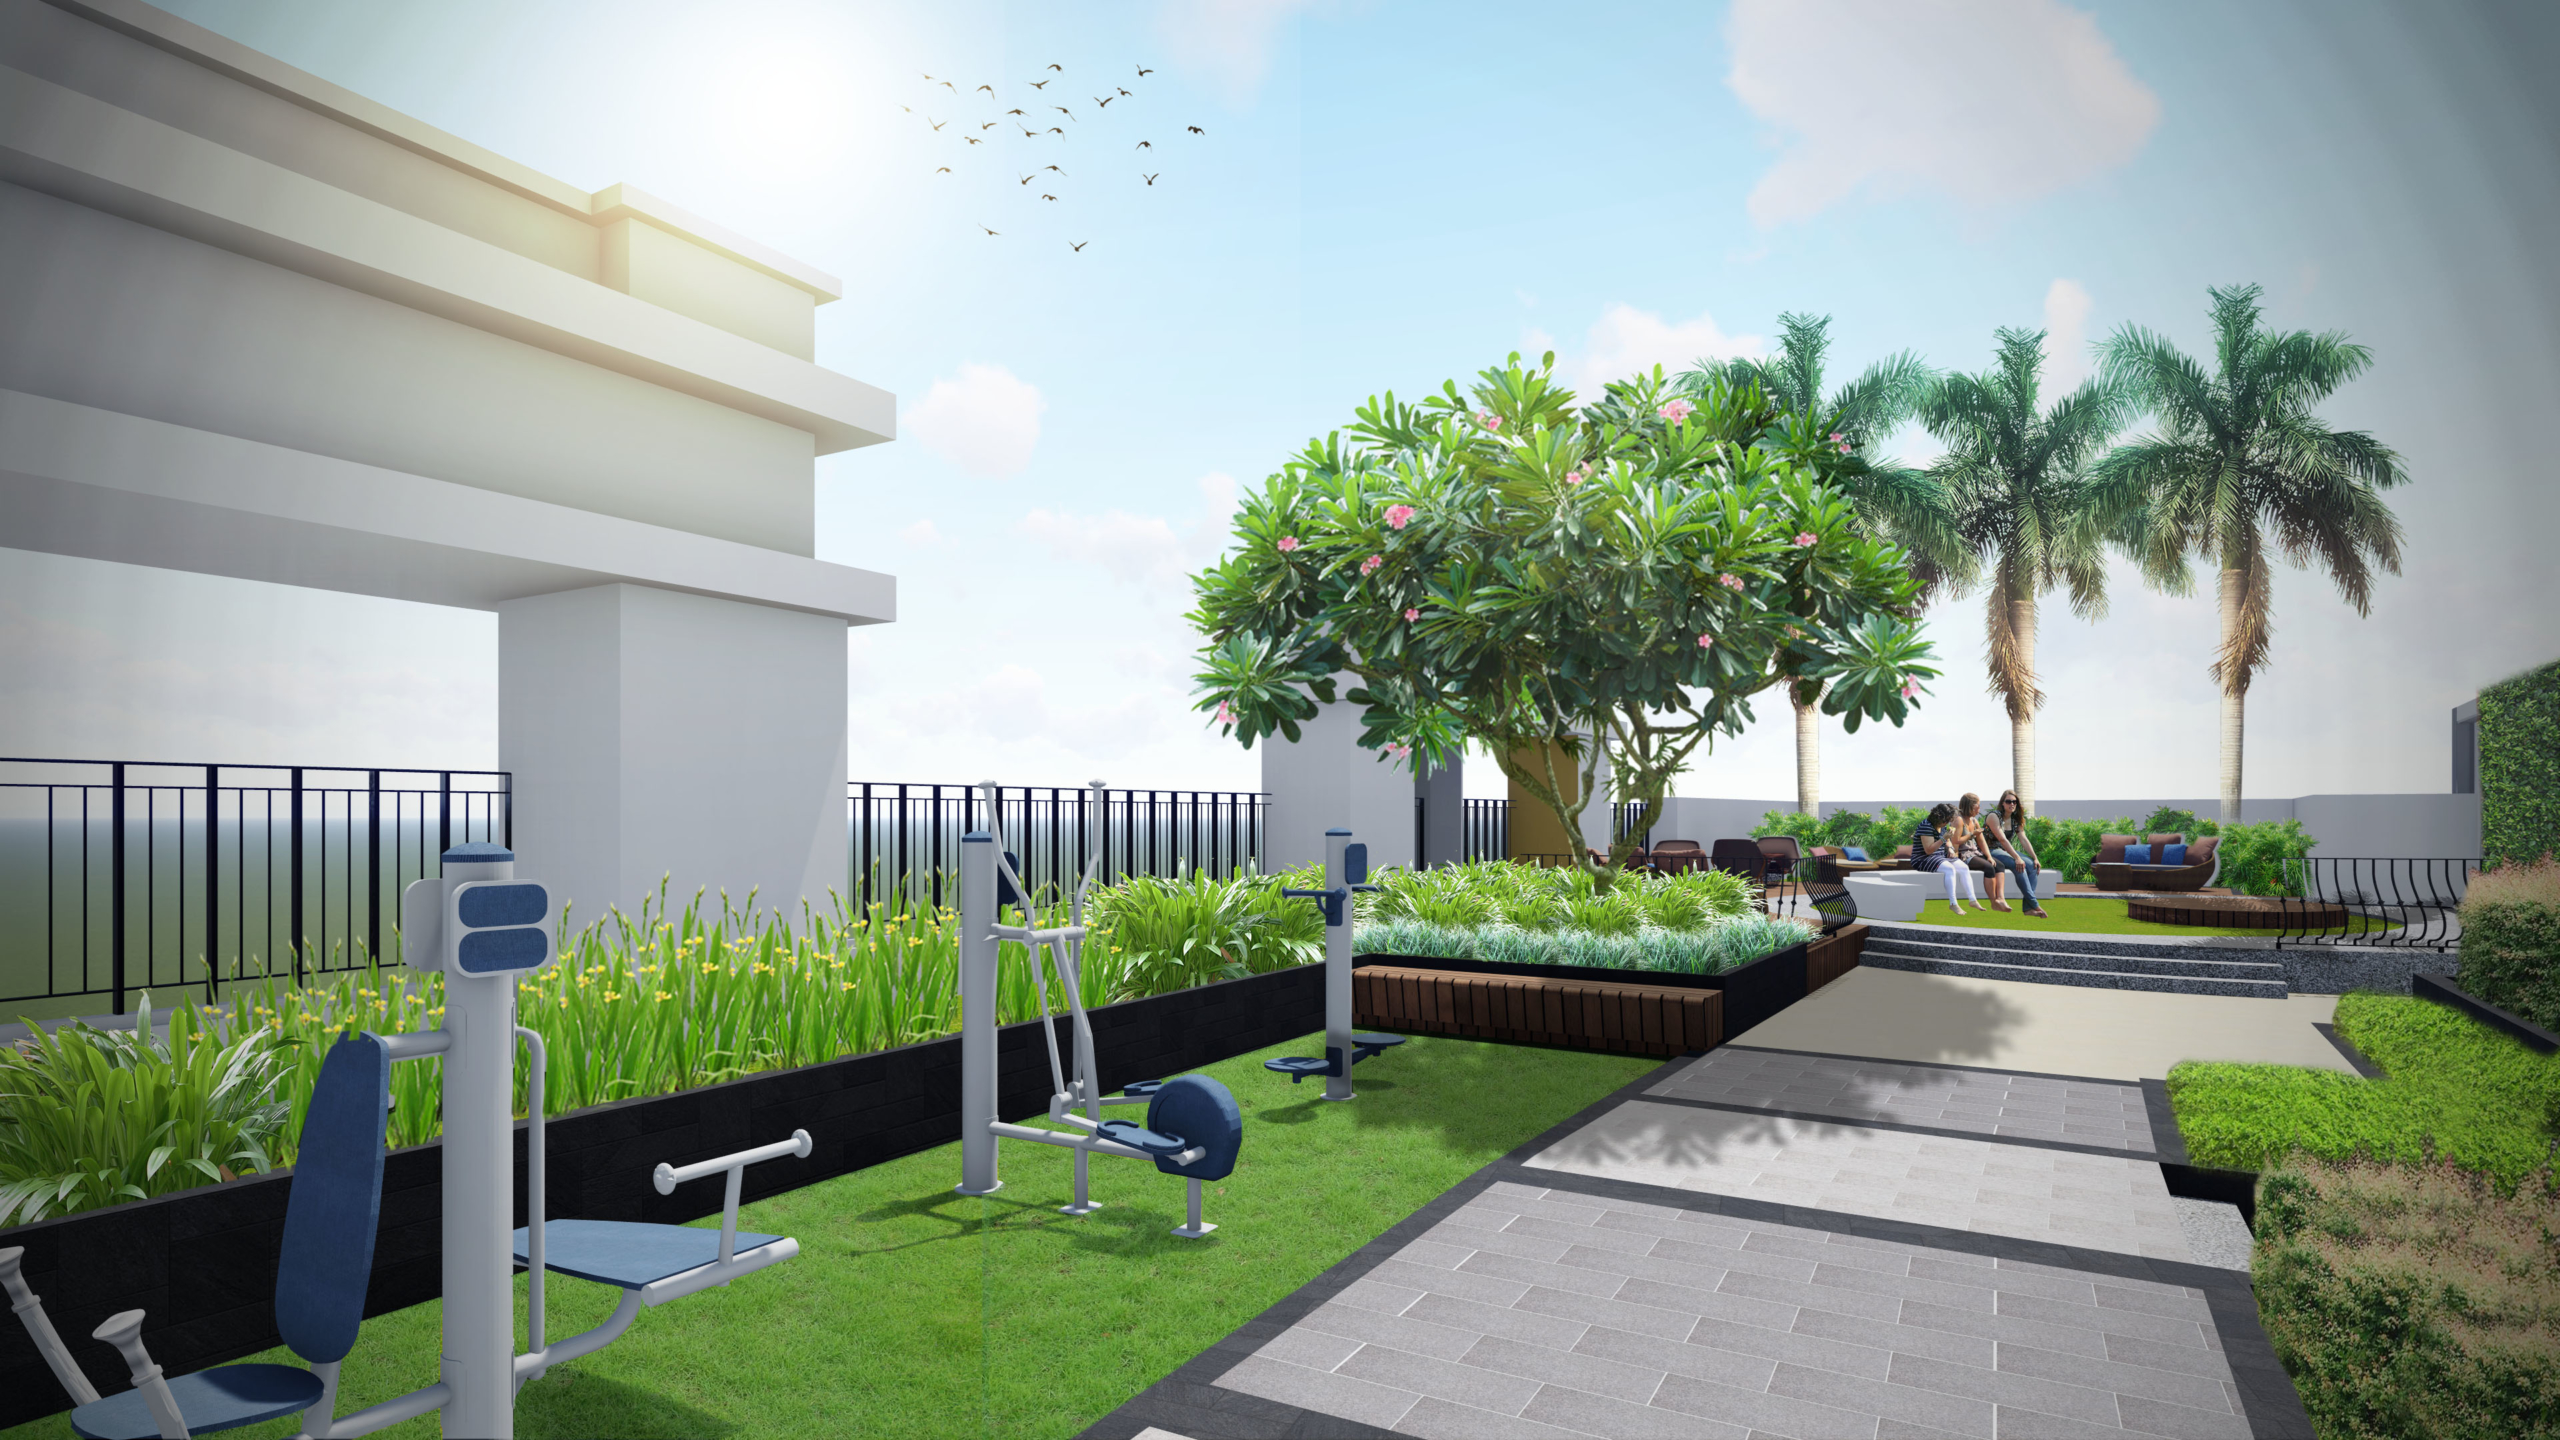 Khuôn viên thể dục dự án căn hộ chung cư Saigon Royal Quận 4 Đường Bến Vân Đồn chủ đầu tư Novaland